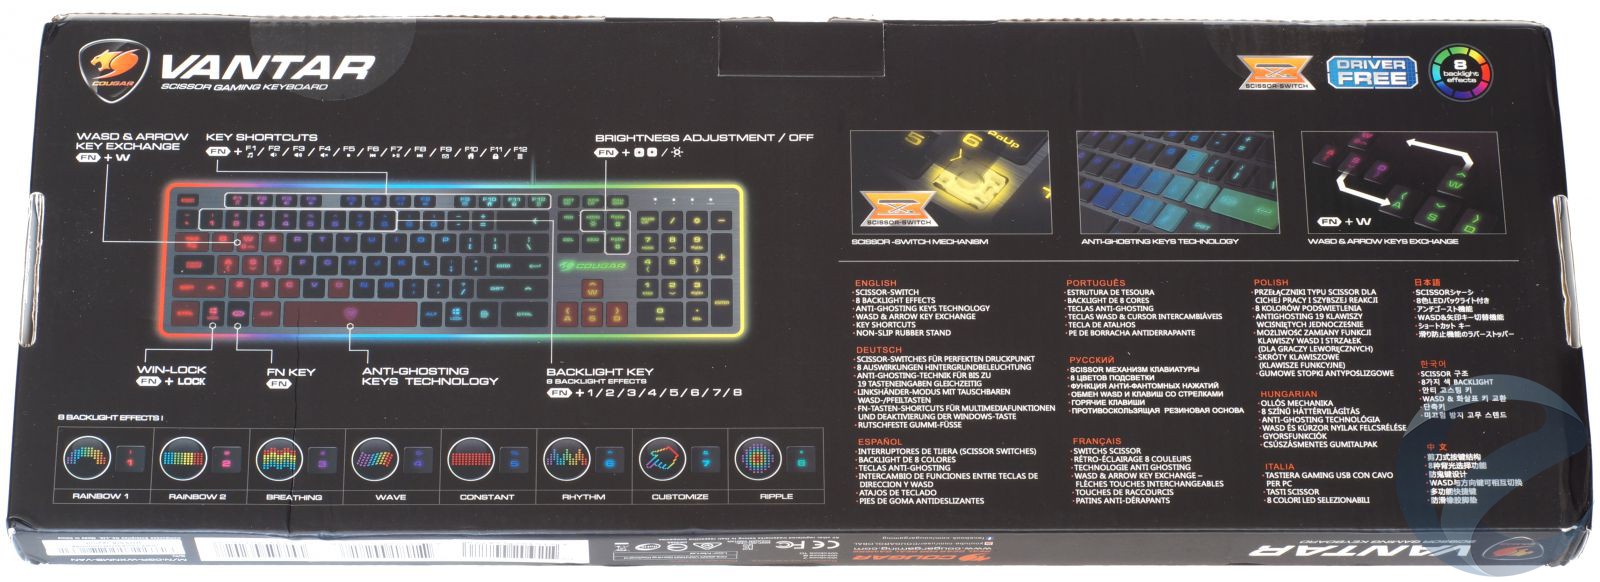 Упаковка и комплектация игровой клавиатуры COUGAR Vantar